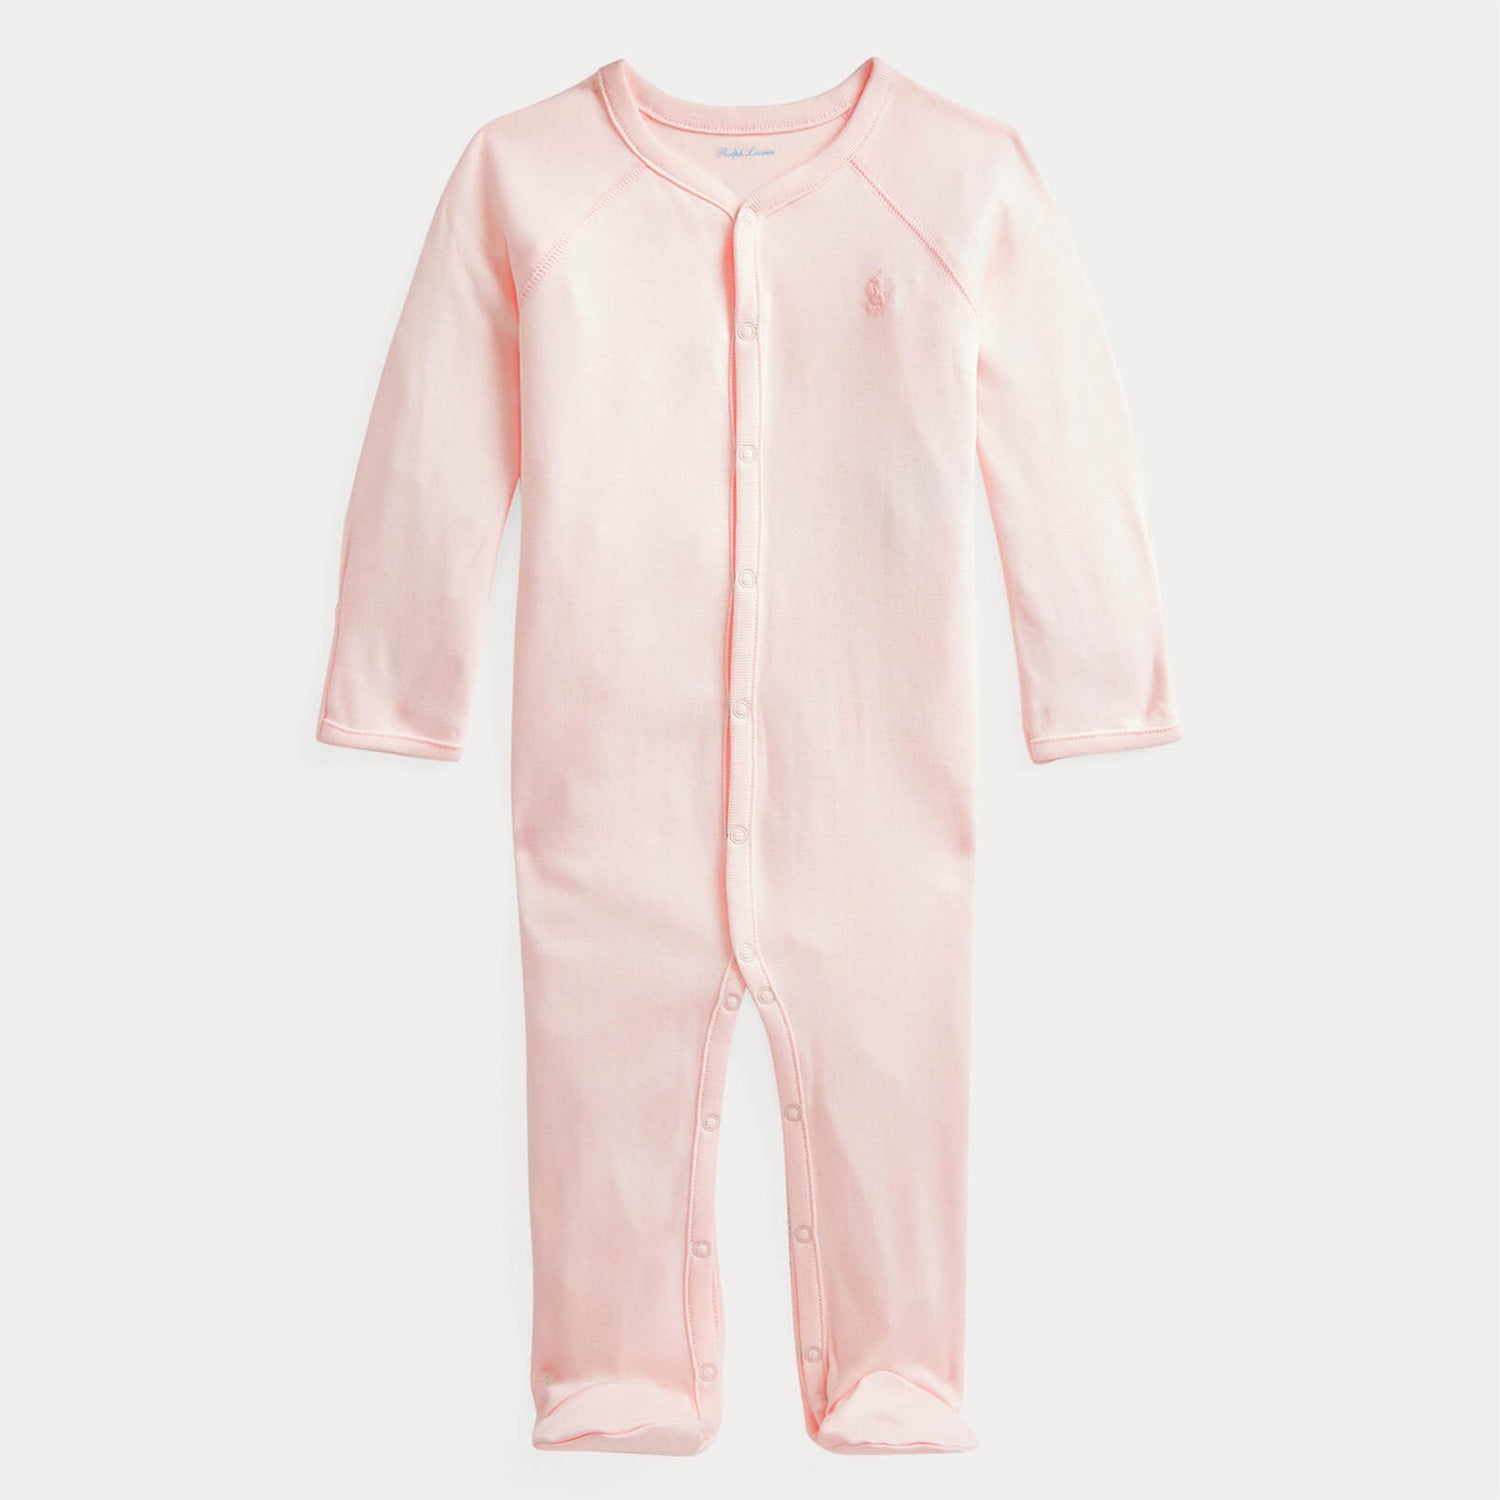 Ralph Lauren Girls' Baby Essential Sleepsuit - Delicate Pink